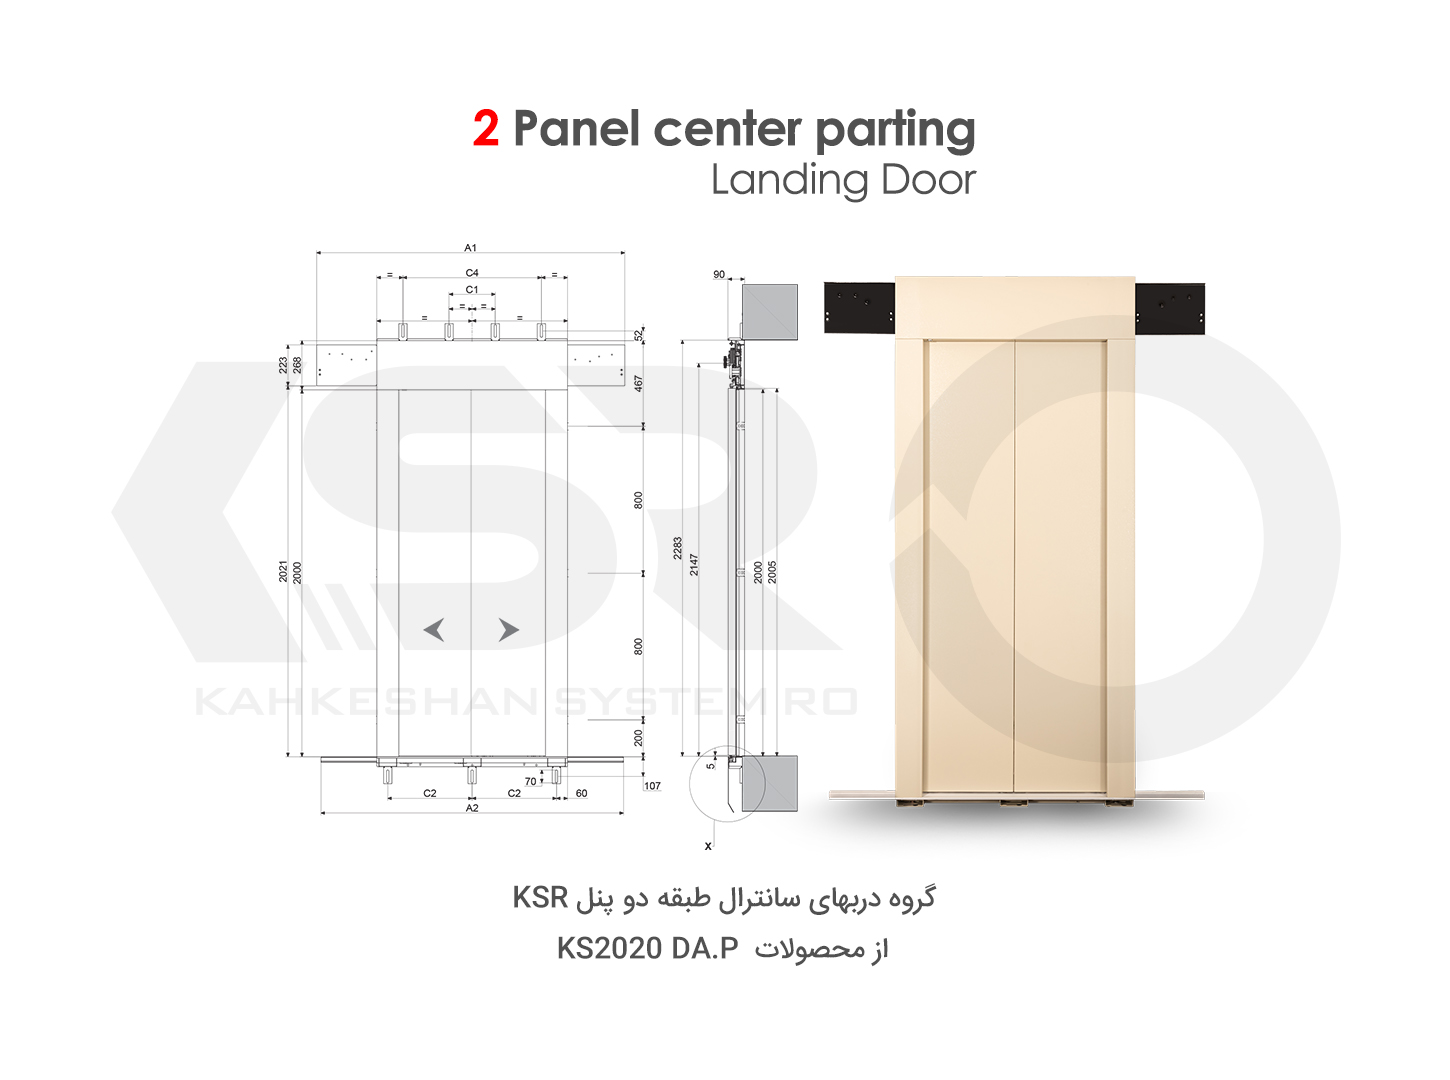 2 Panel center parting landing door